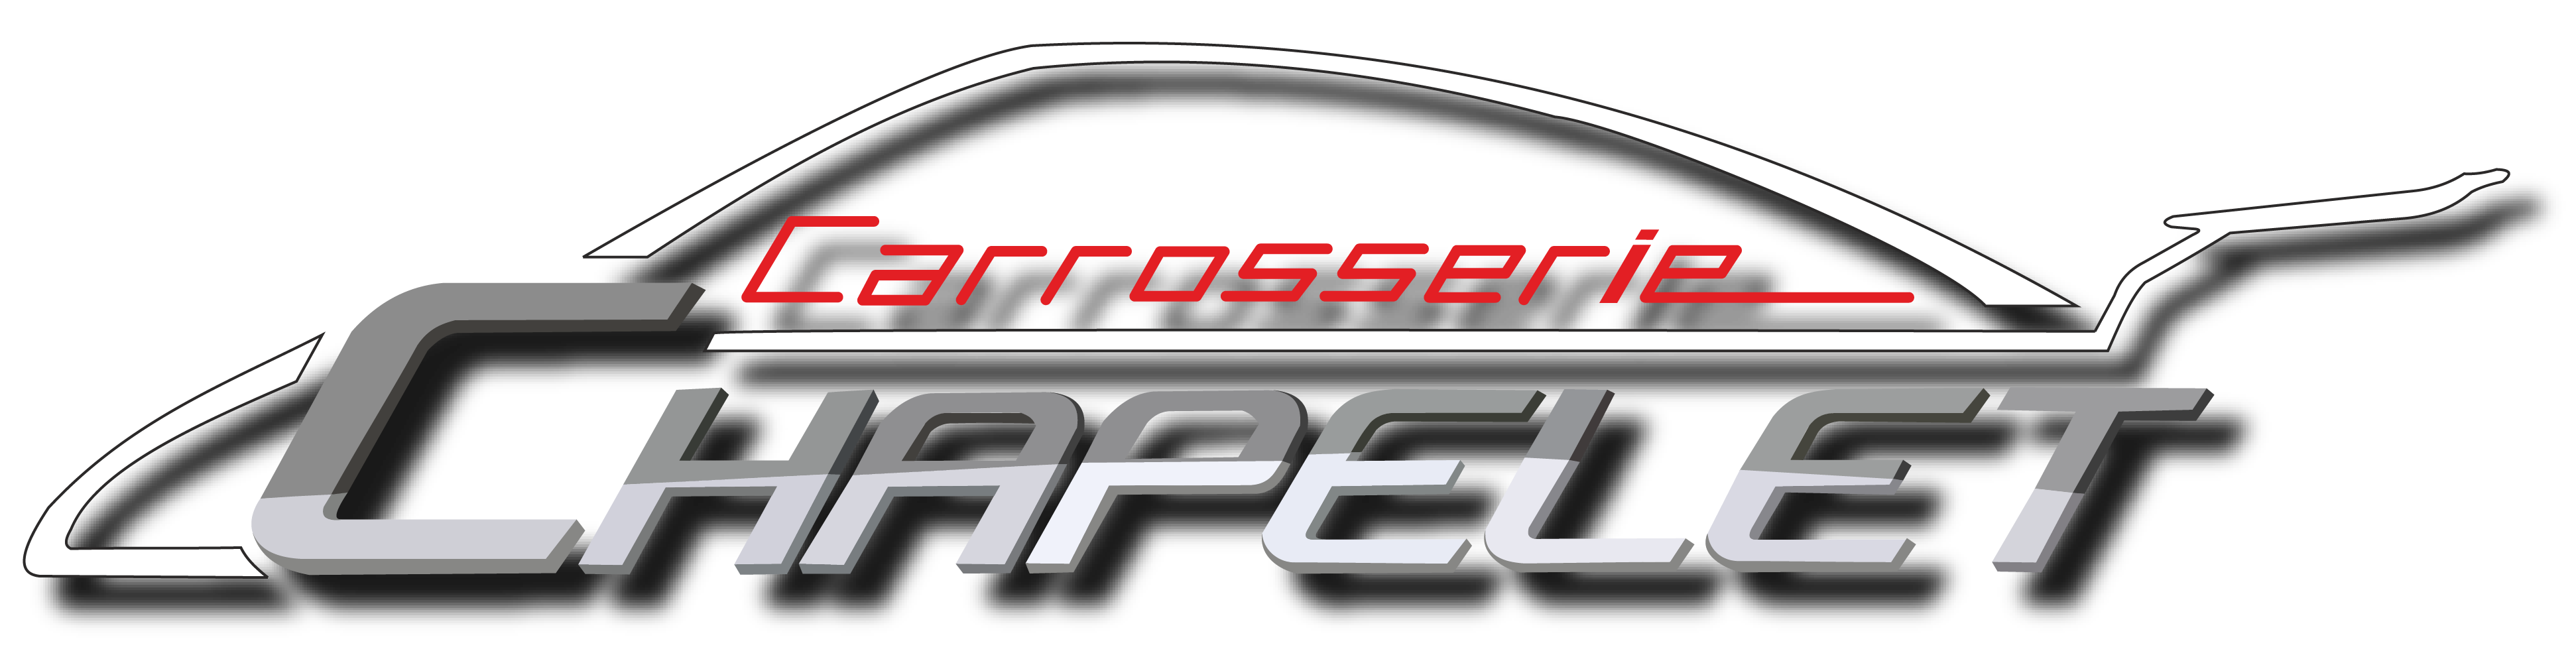 logo-CARROSSERIE CHAPELET